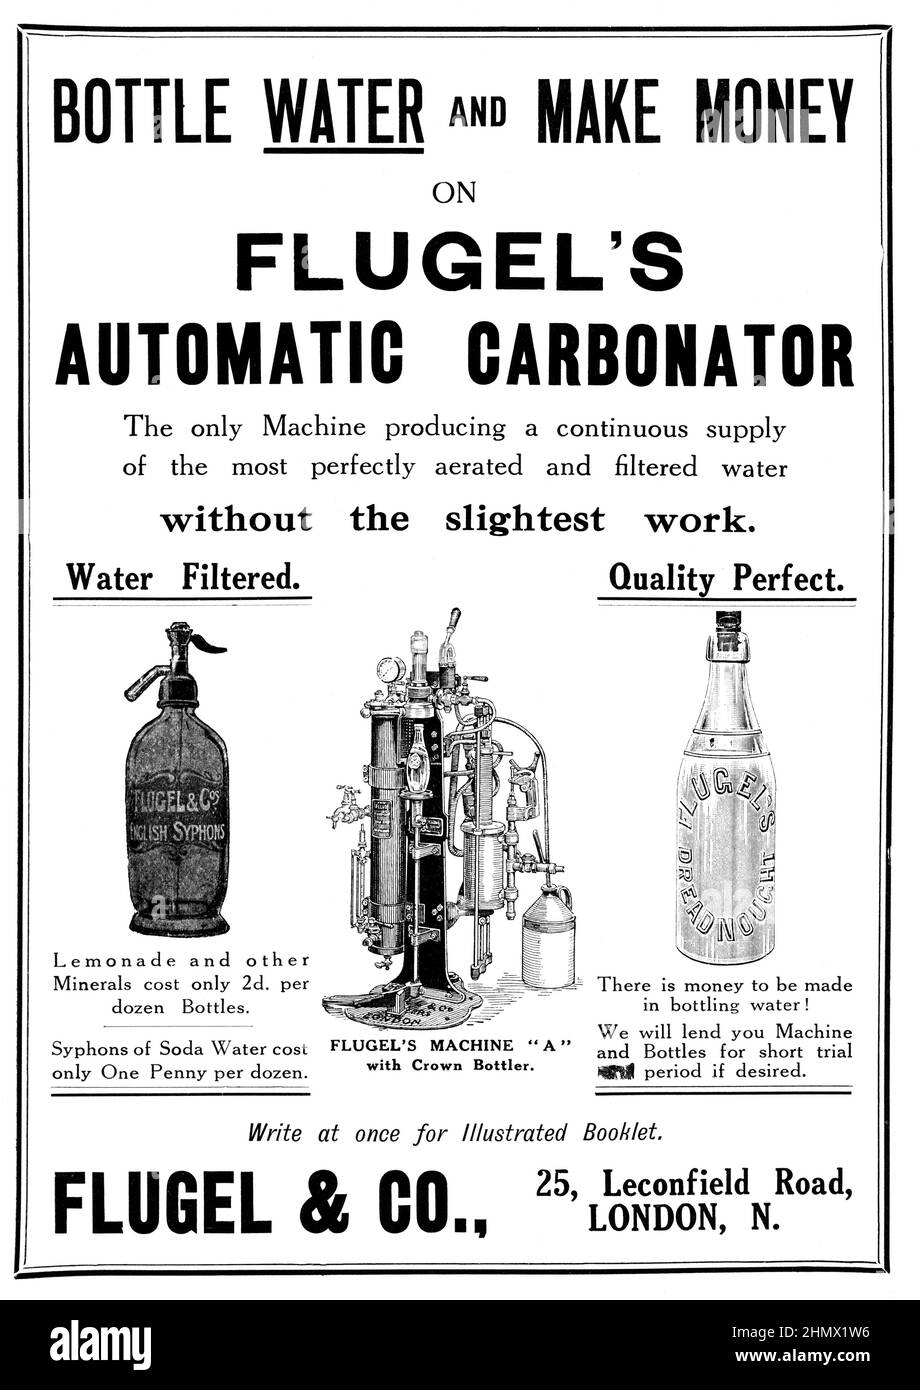 Une publicité vintage pour le carbonateur automatique de Flugel du Journal de commerce de Grocer, 1914 Banque D'Images